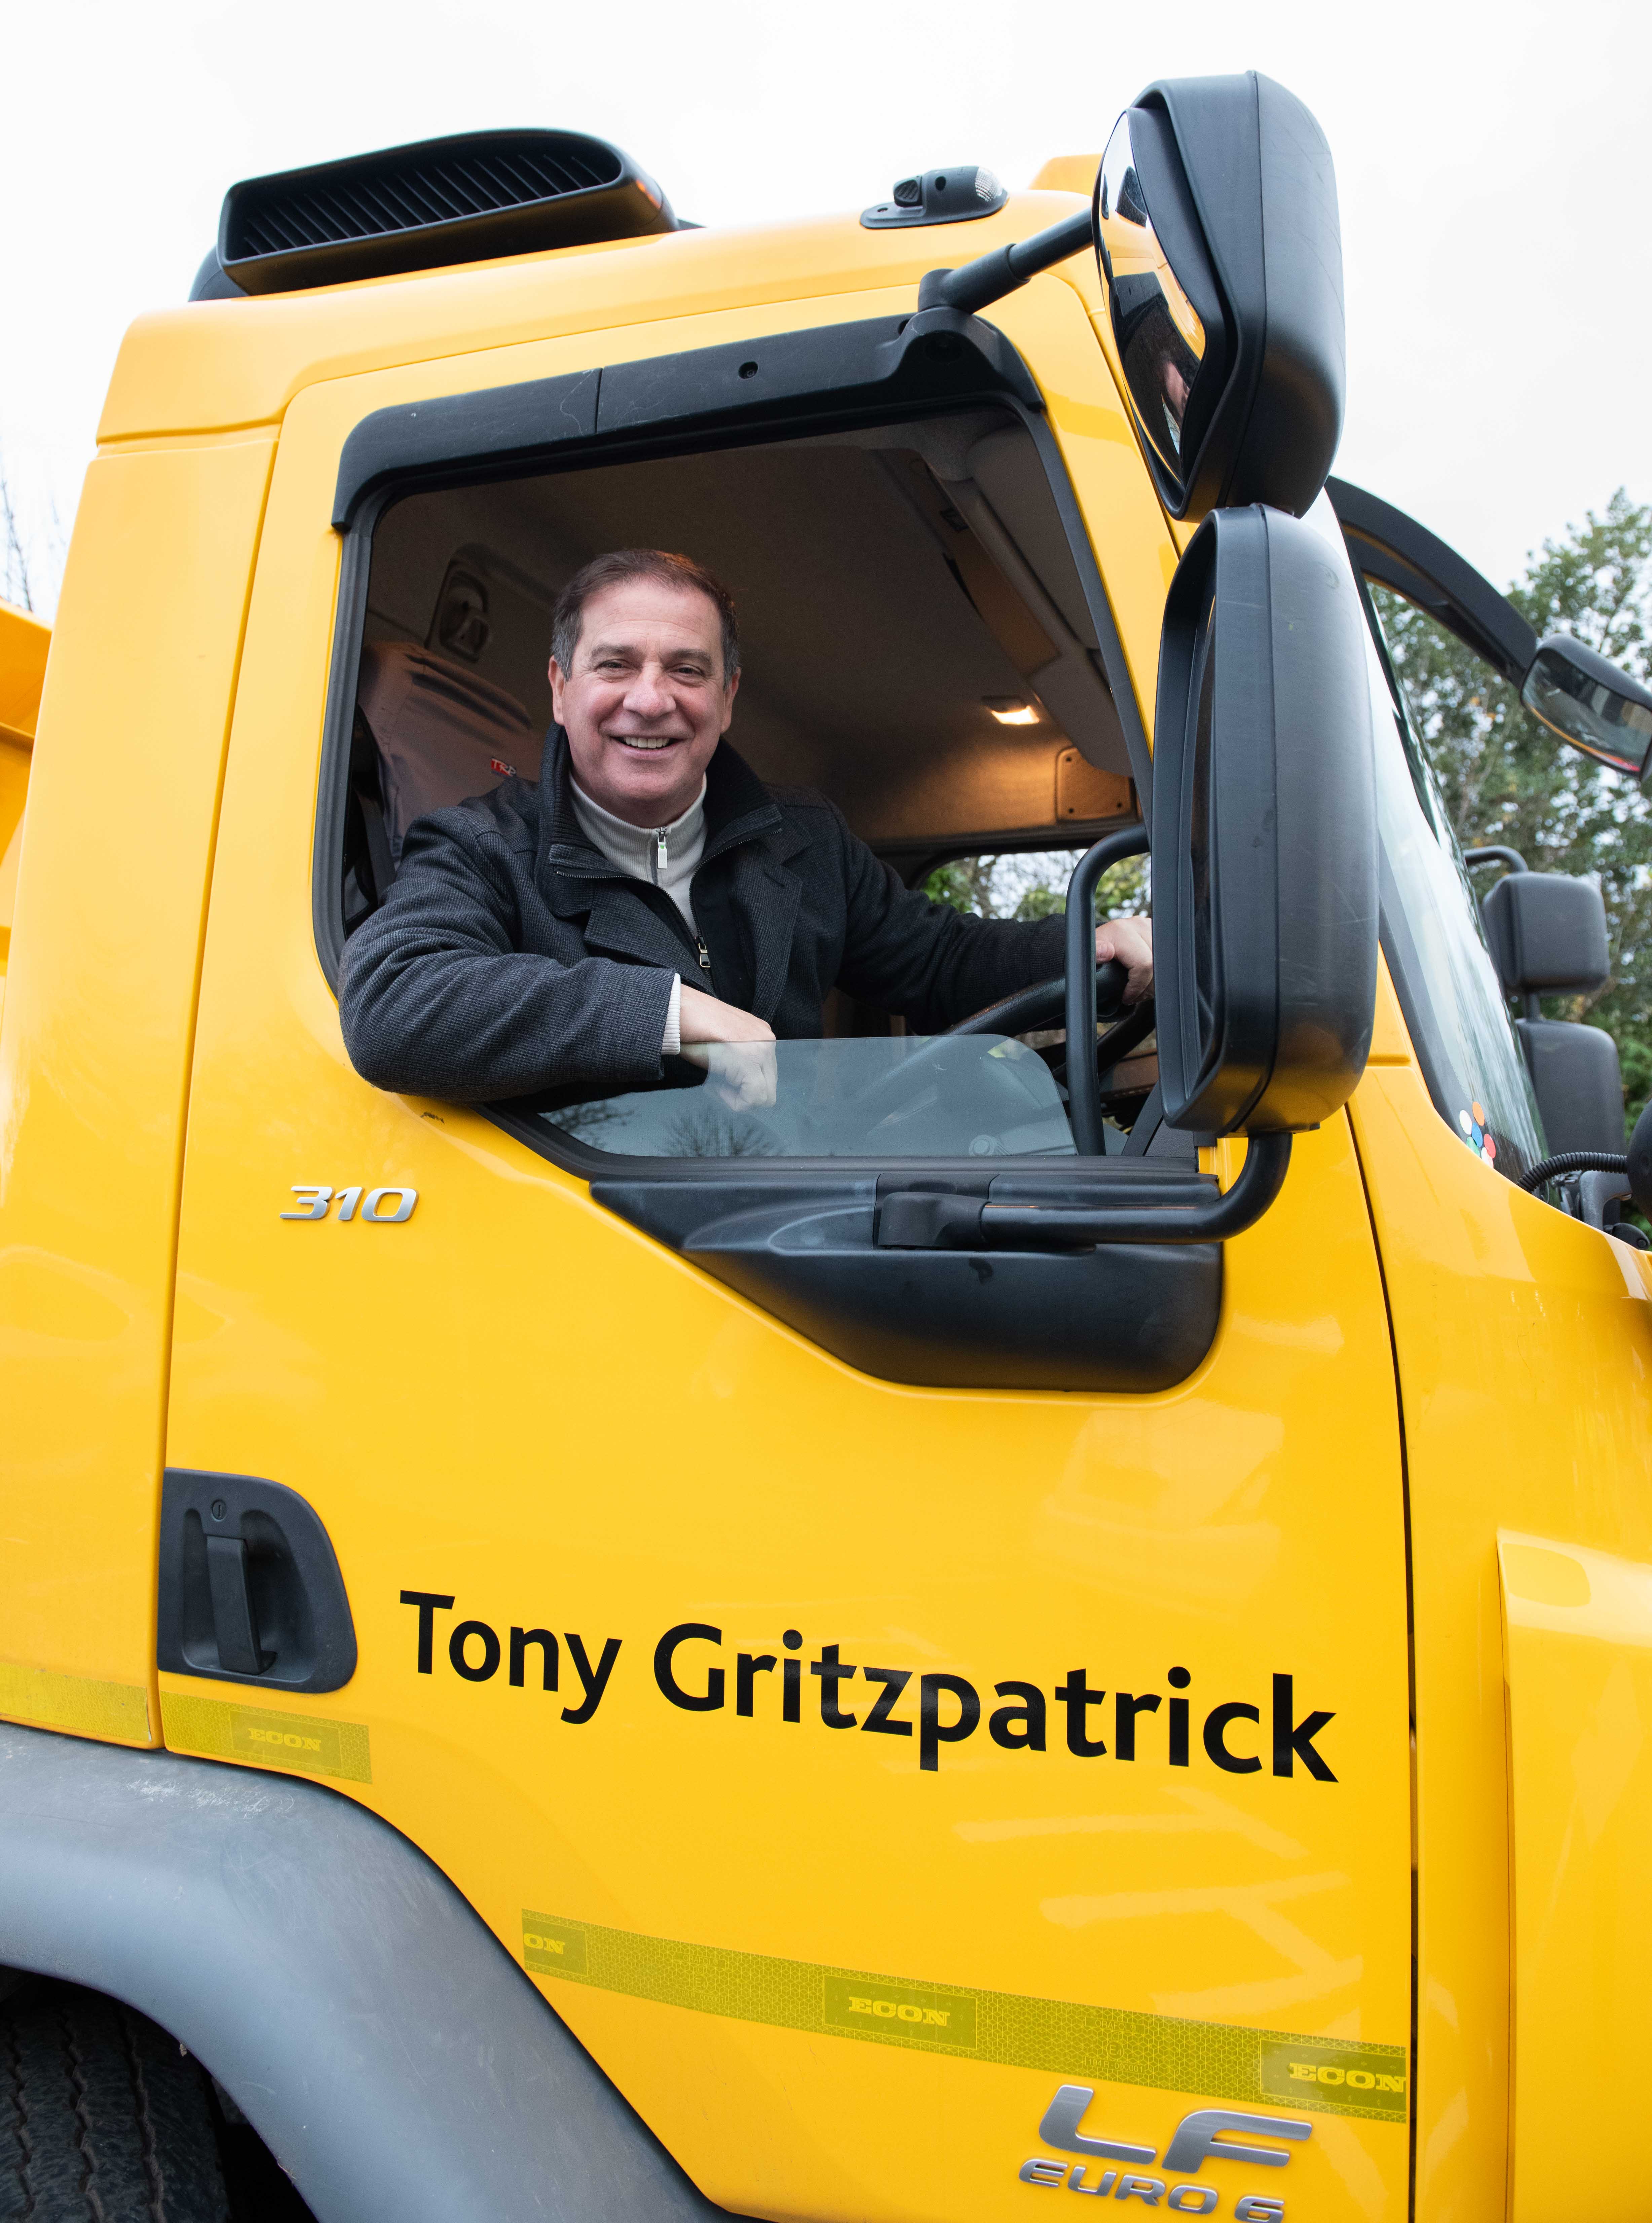 Tony Fitzpatrick in his winter namesake